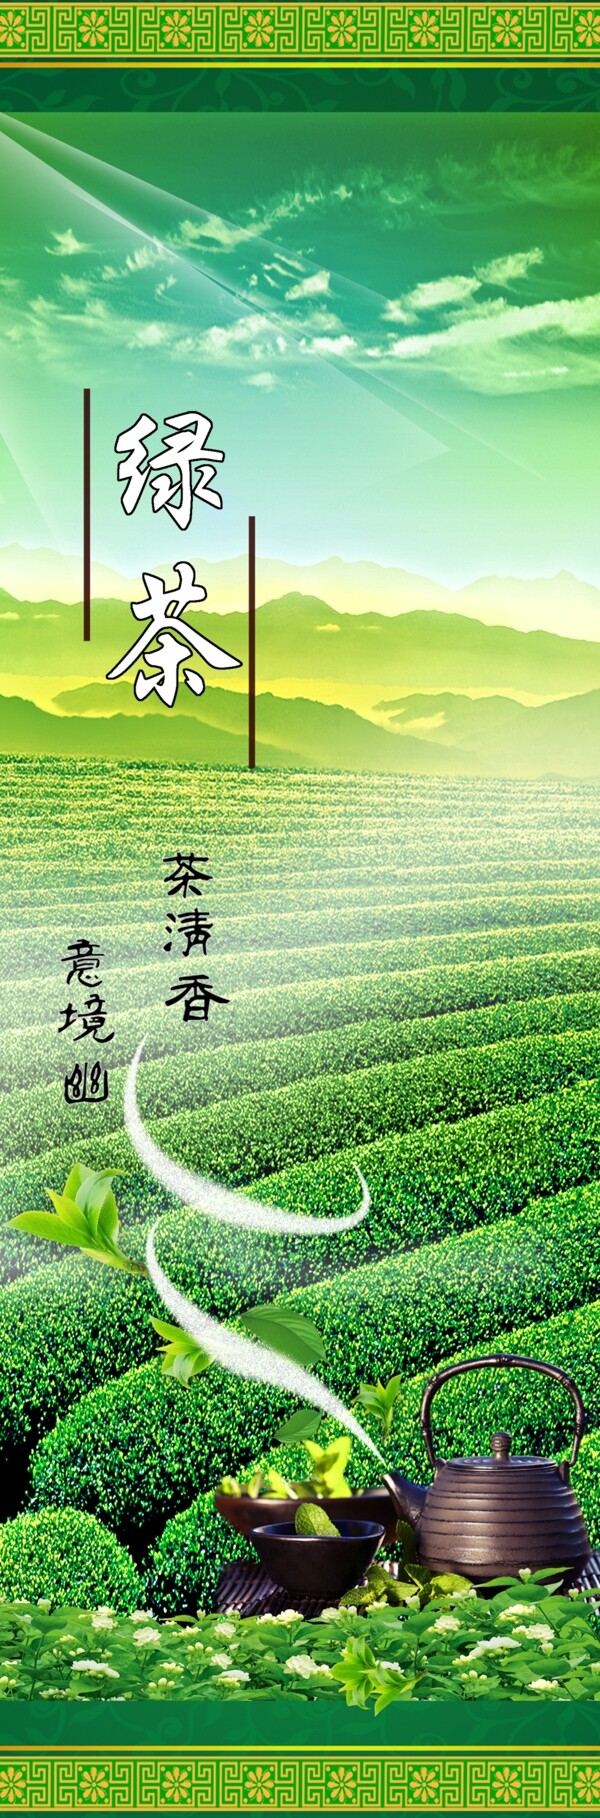 绿茶广告设计素材下载